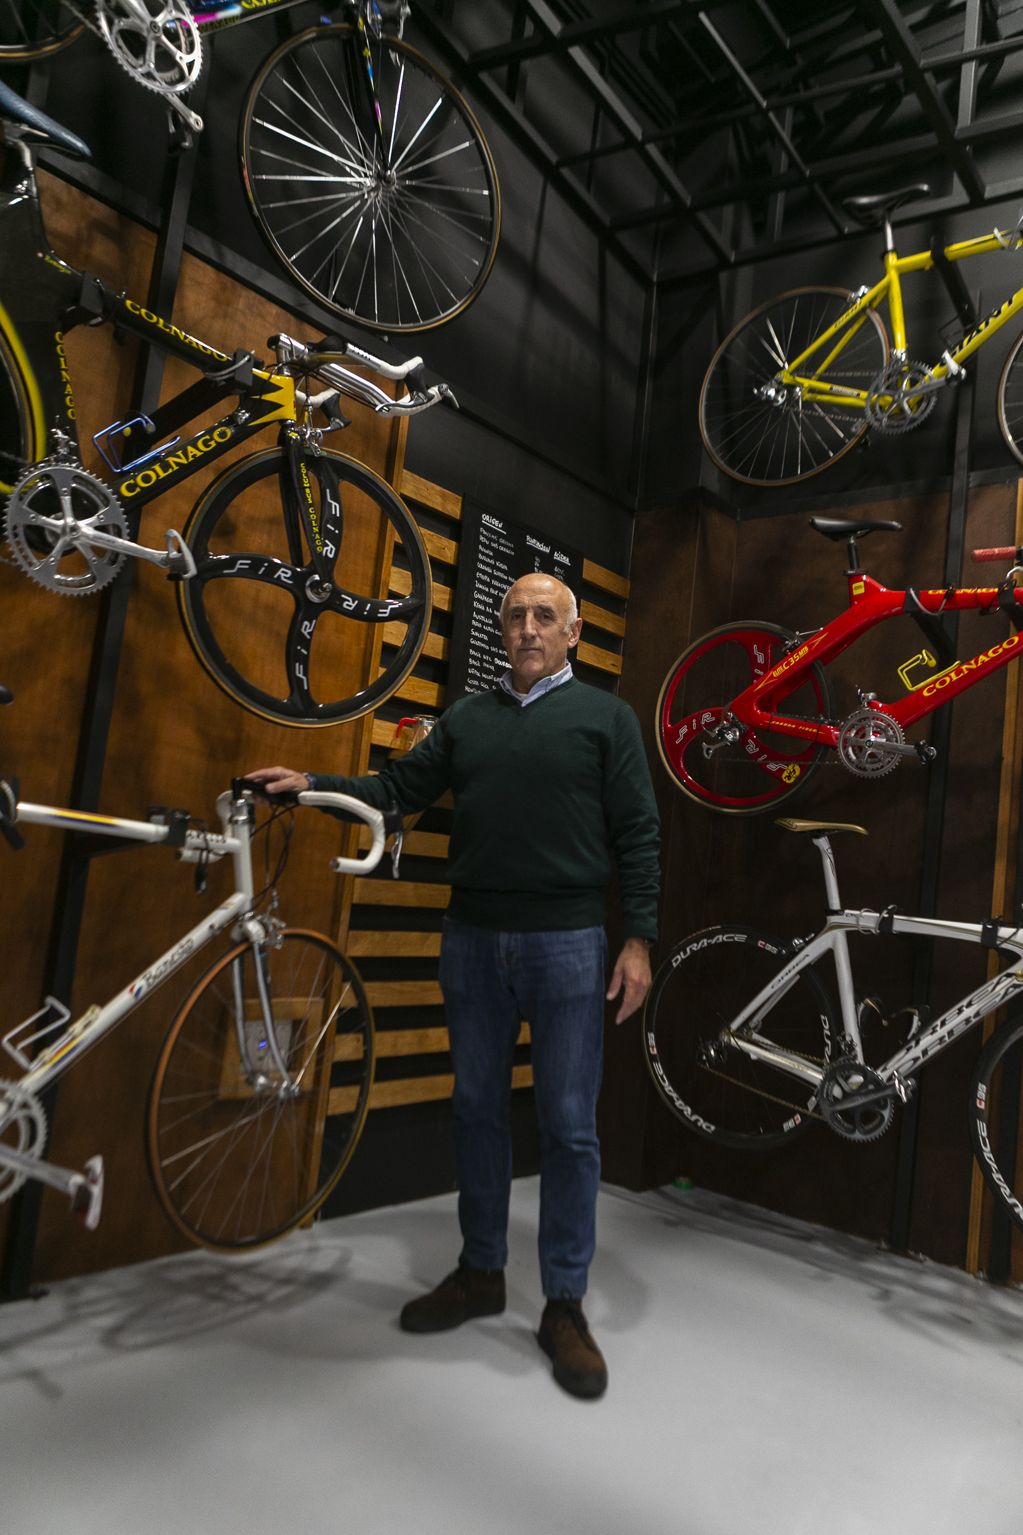 Así es por dentro el tostadero de cafés de Avilés con bicicletas de campeones del mundo